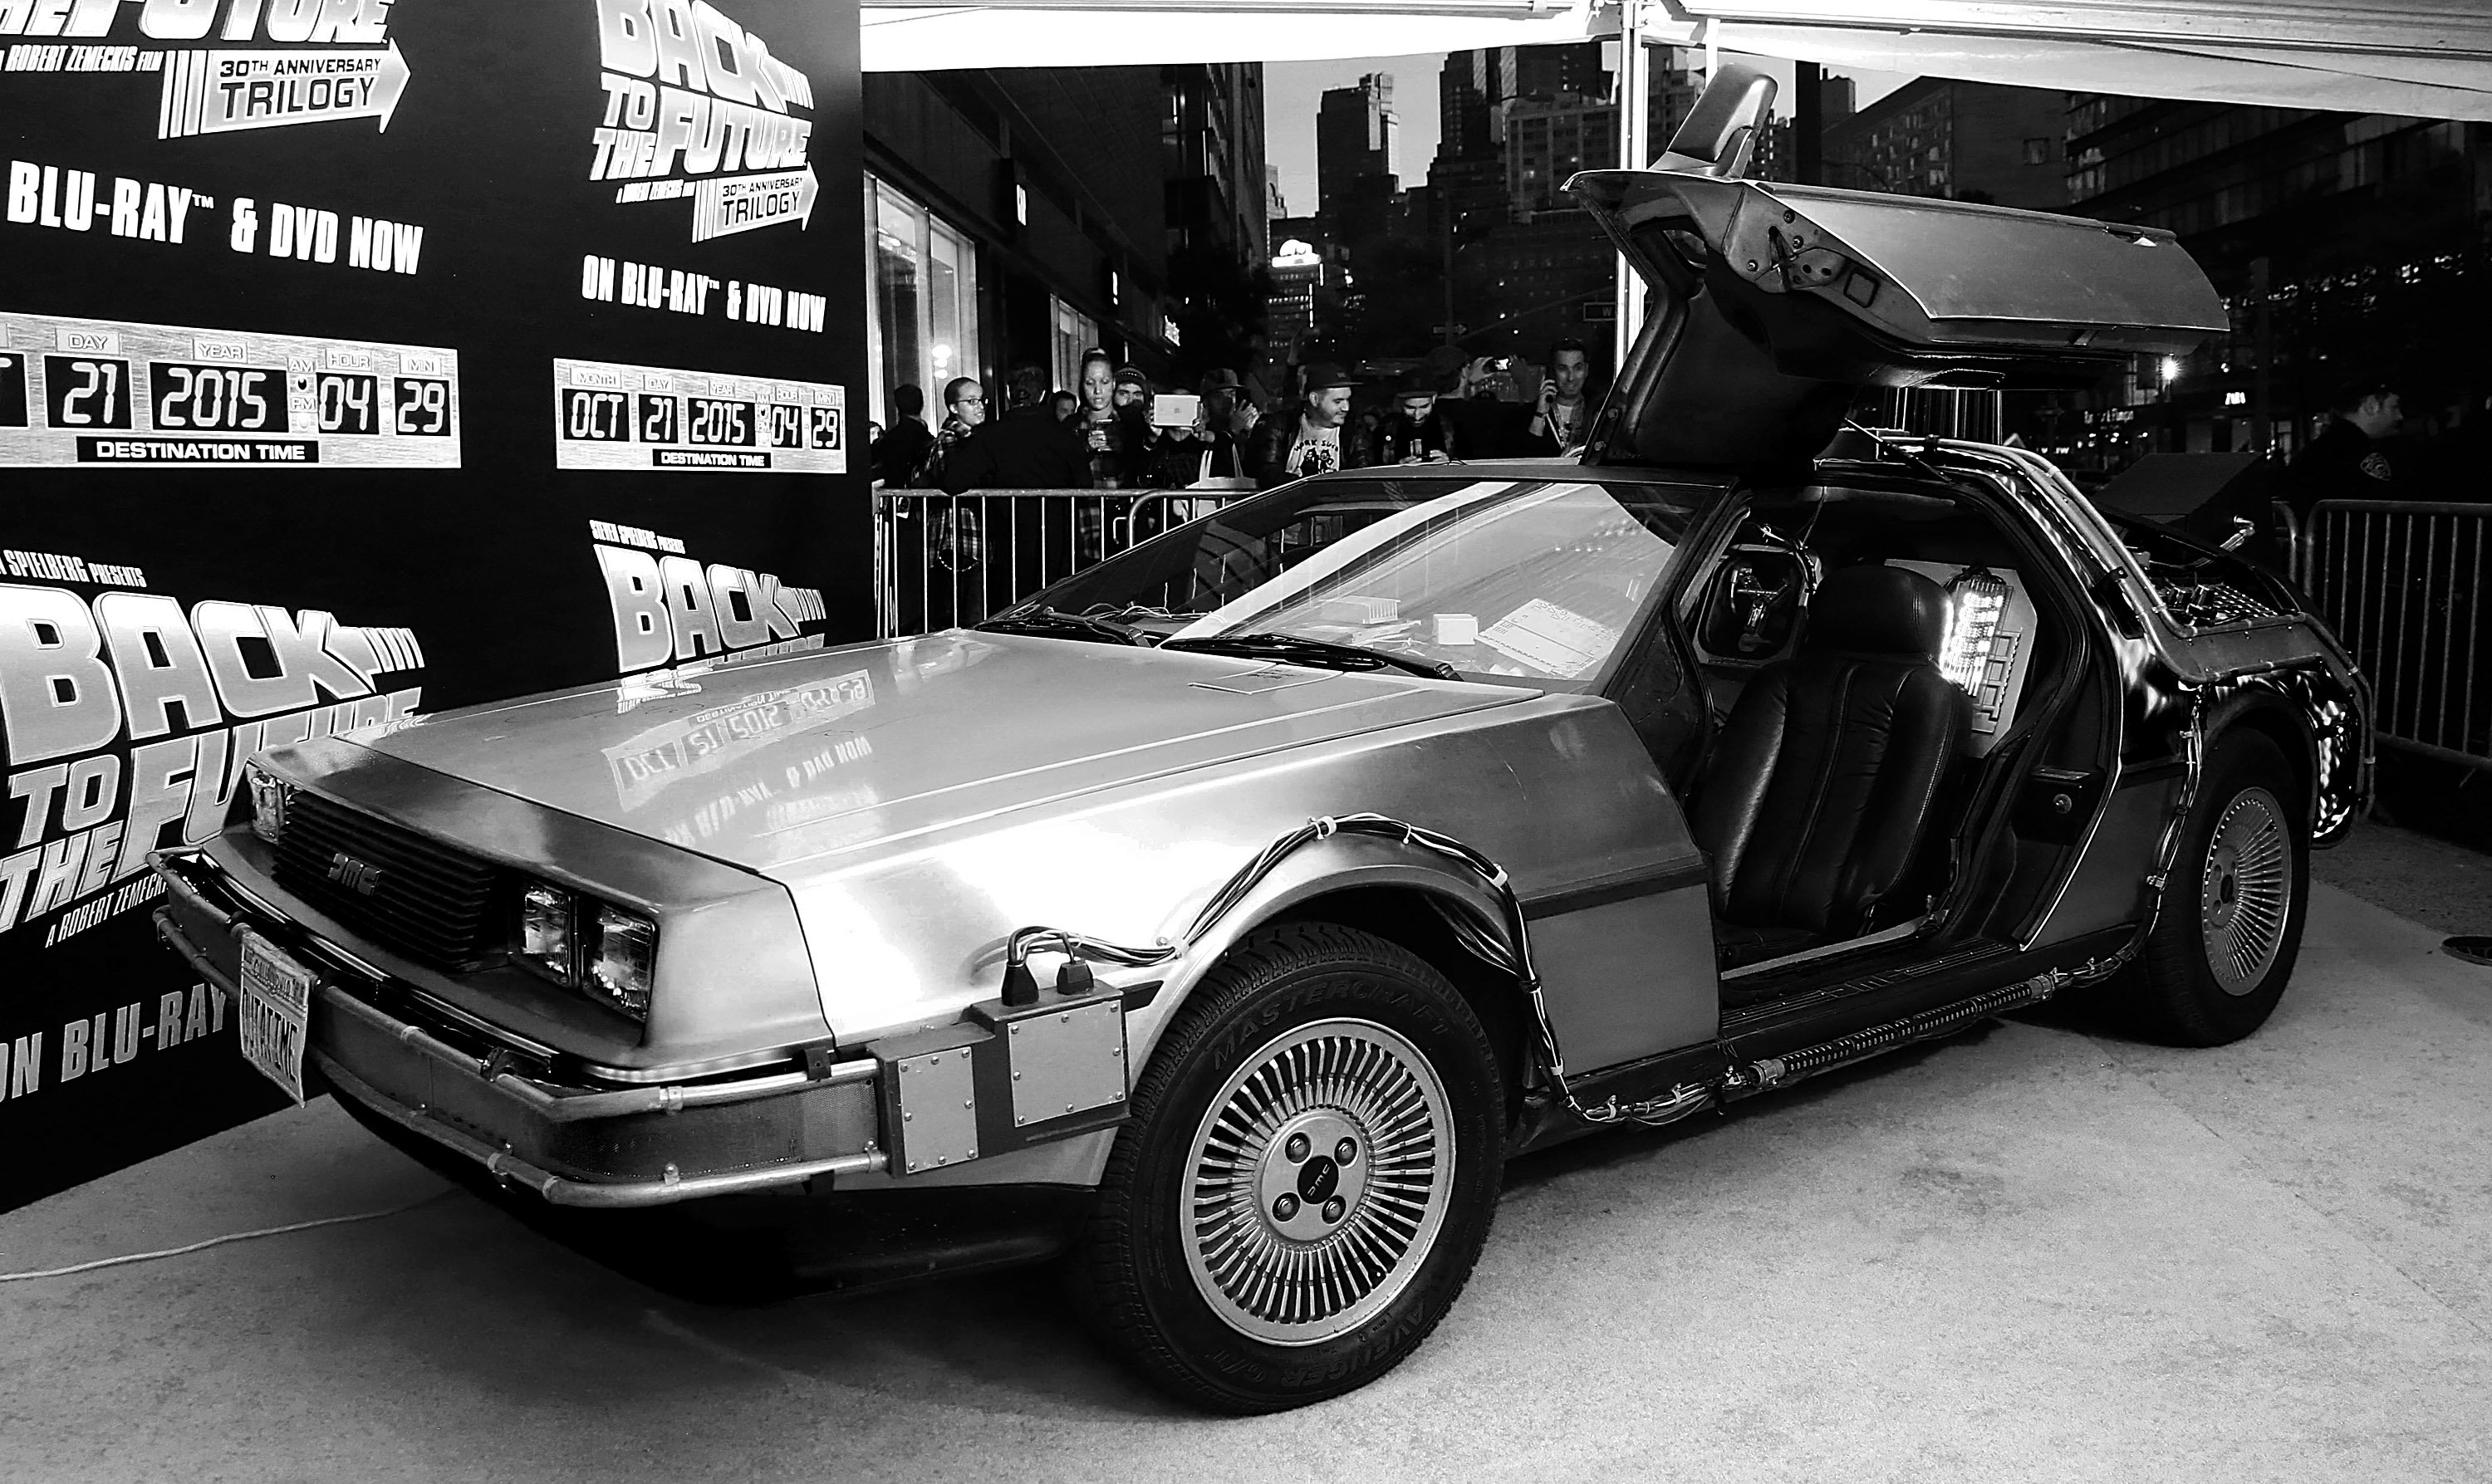 A DeLorean near the Back to the Future logo